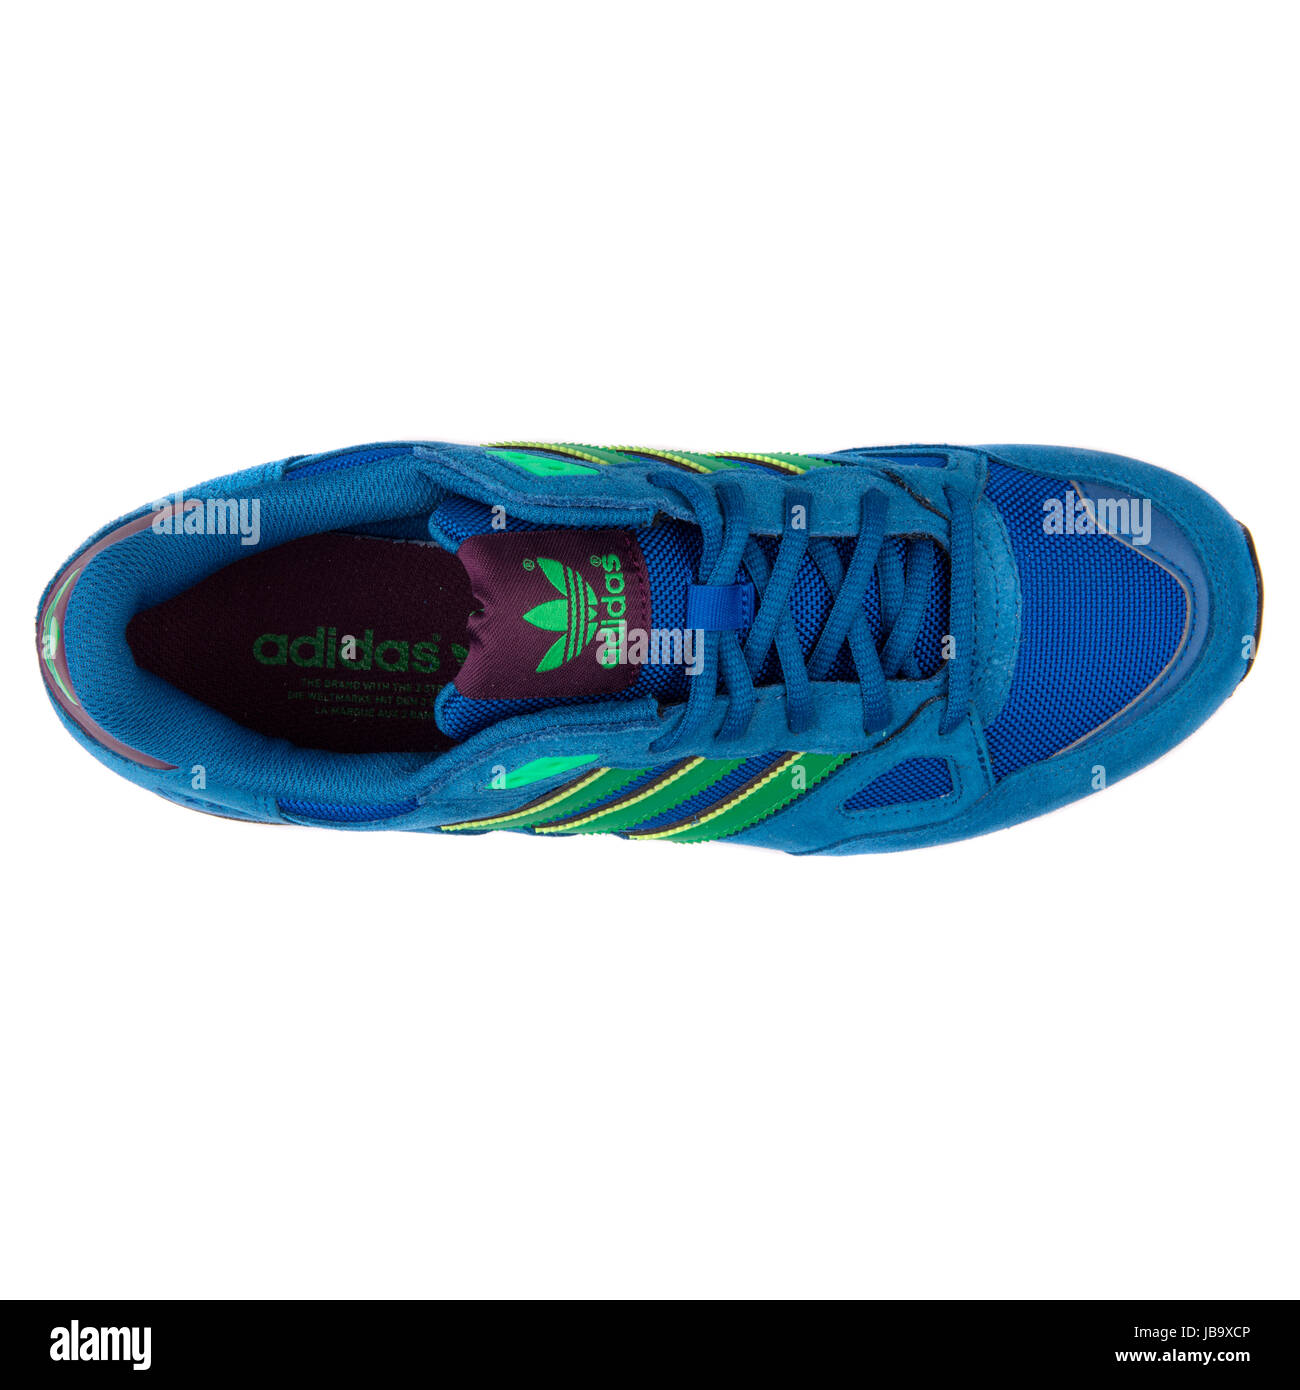 Desilusión maximizar Representación Adidas ZX 750 azul y verde los deportes masculinos Sneakers - B24857  Fotografía de stock - Alamy